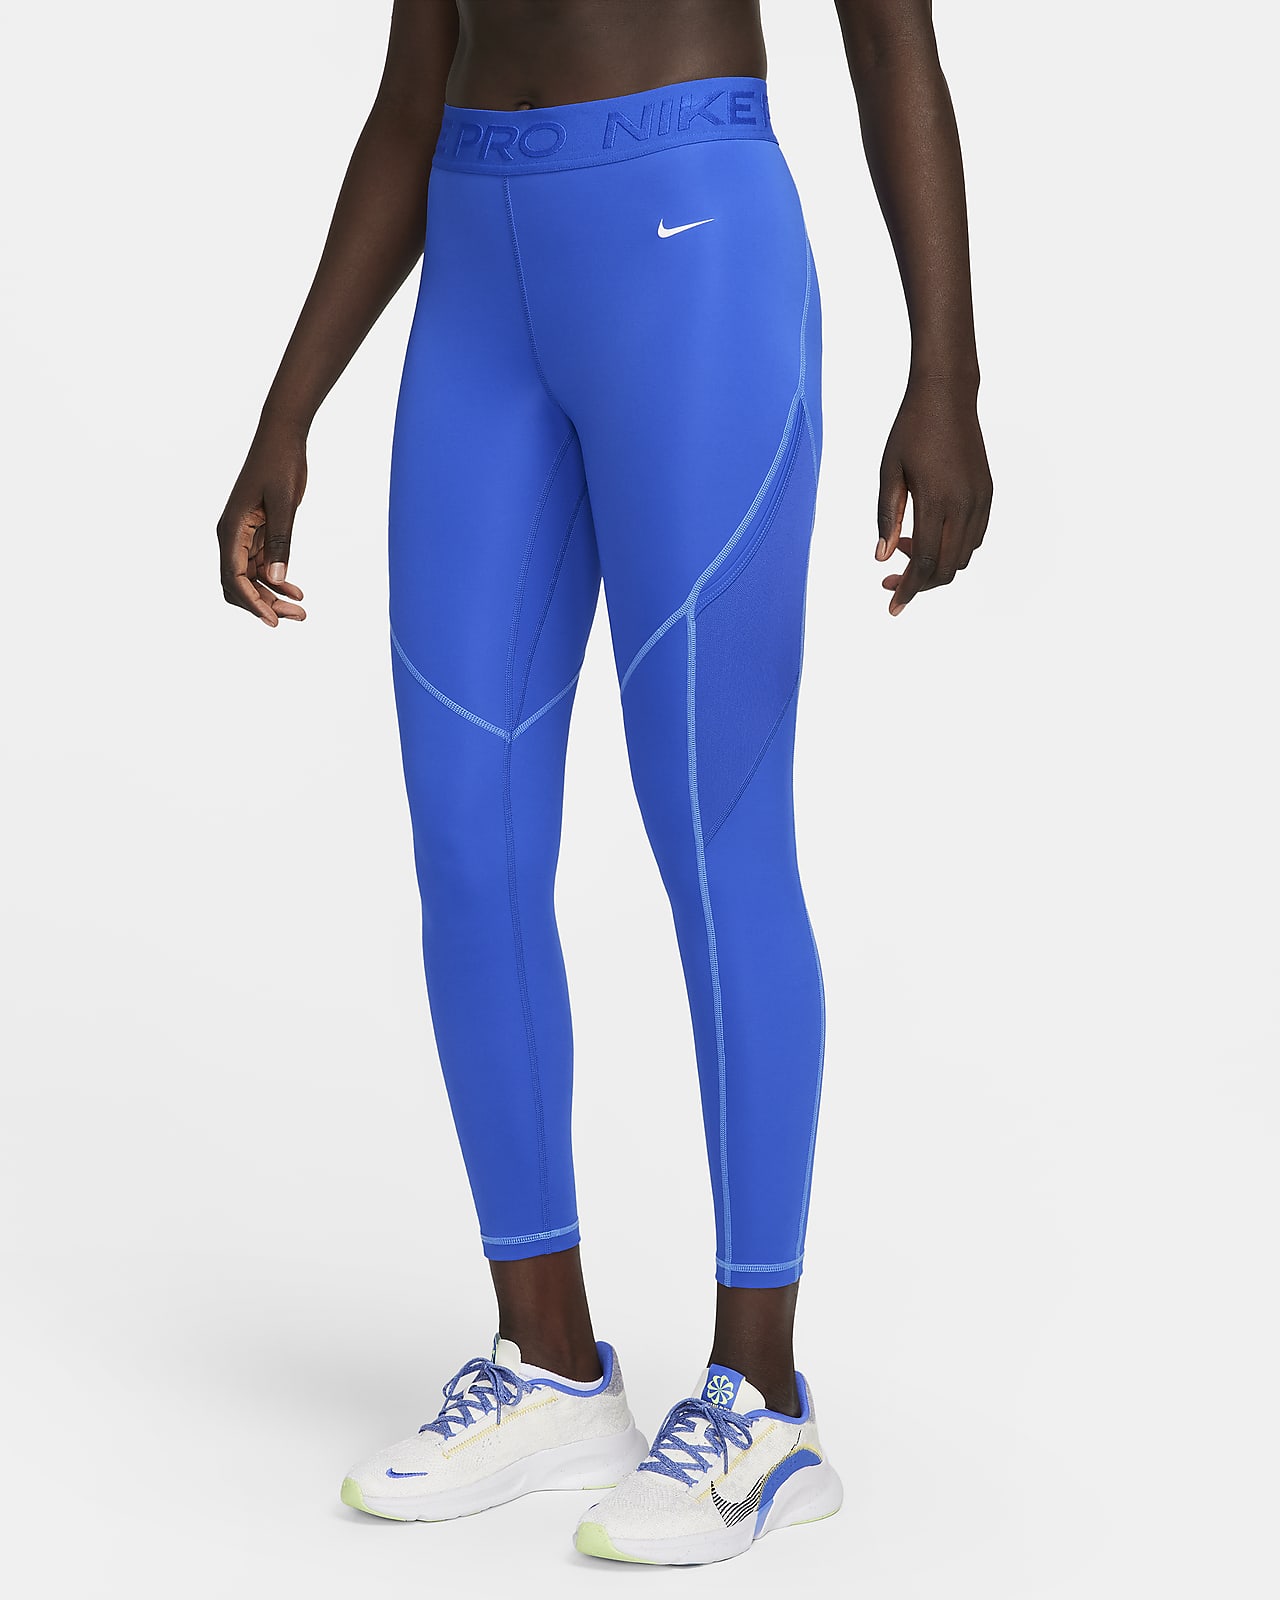 Preços baixos em Leggings Nike Poliéster para mulheres